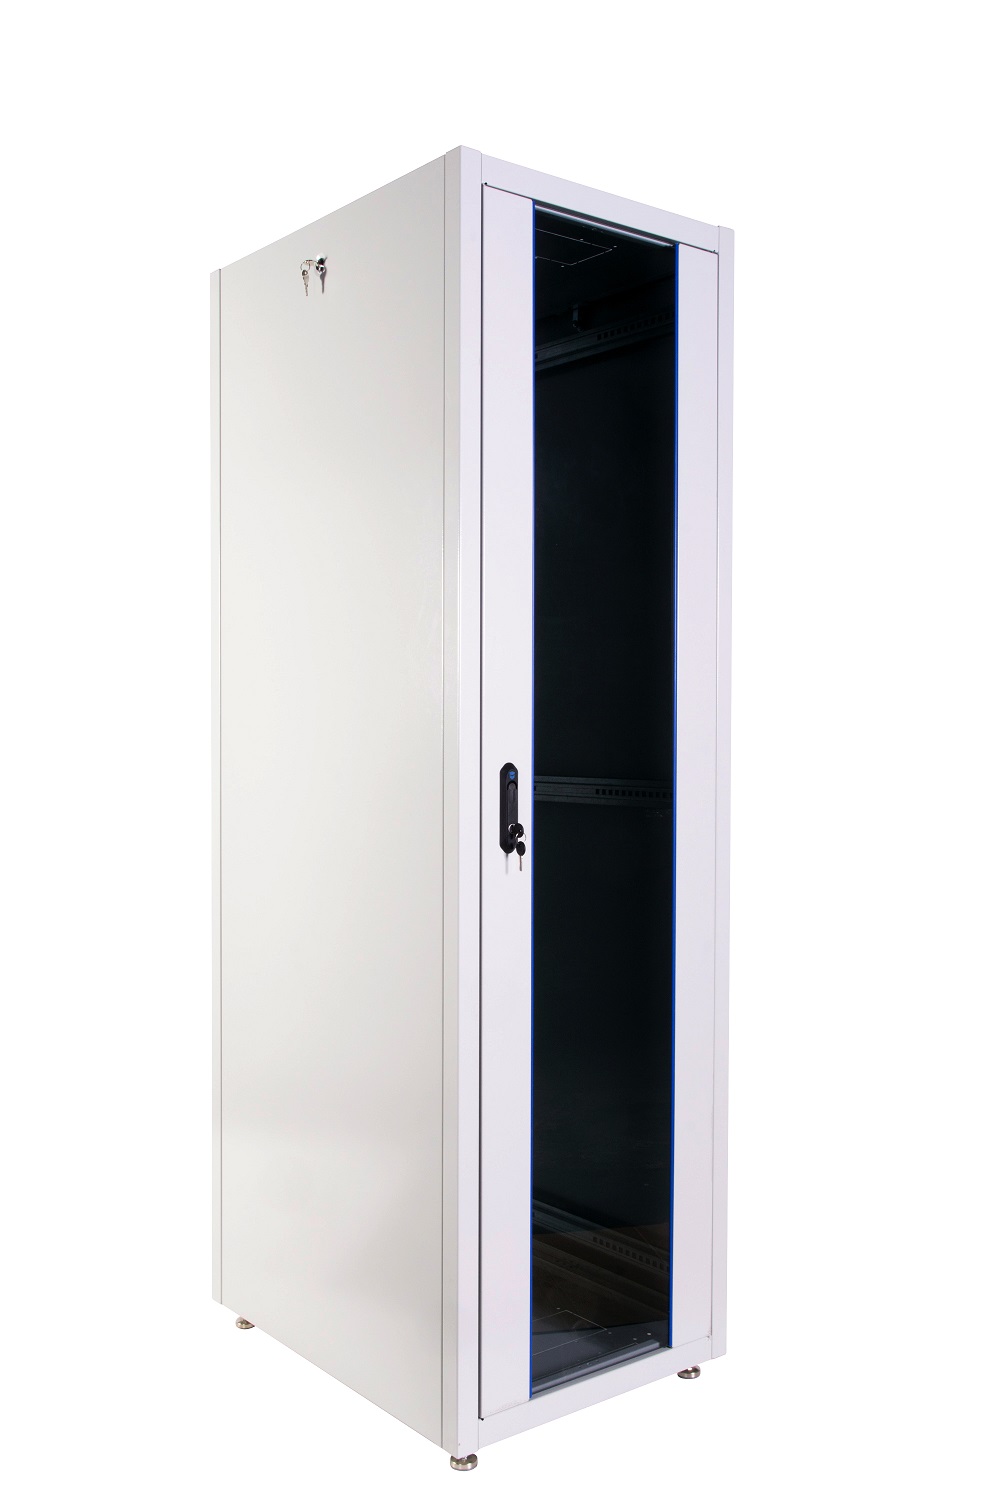  Купить Шкаф телекоммуникационный напольный ЭКОНОМ 48U (800 × 1000) дверь стекло, дверь металл